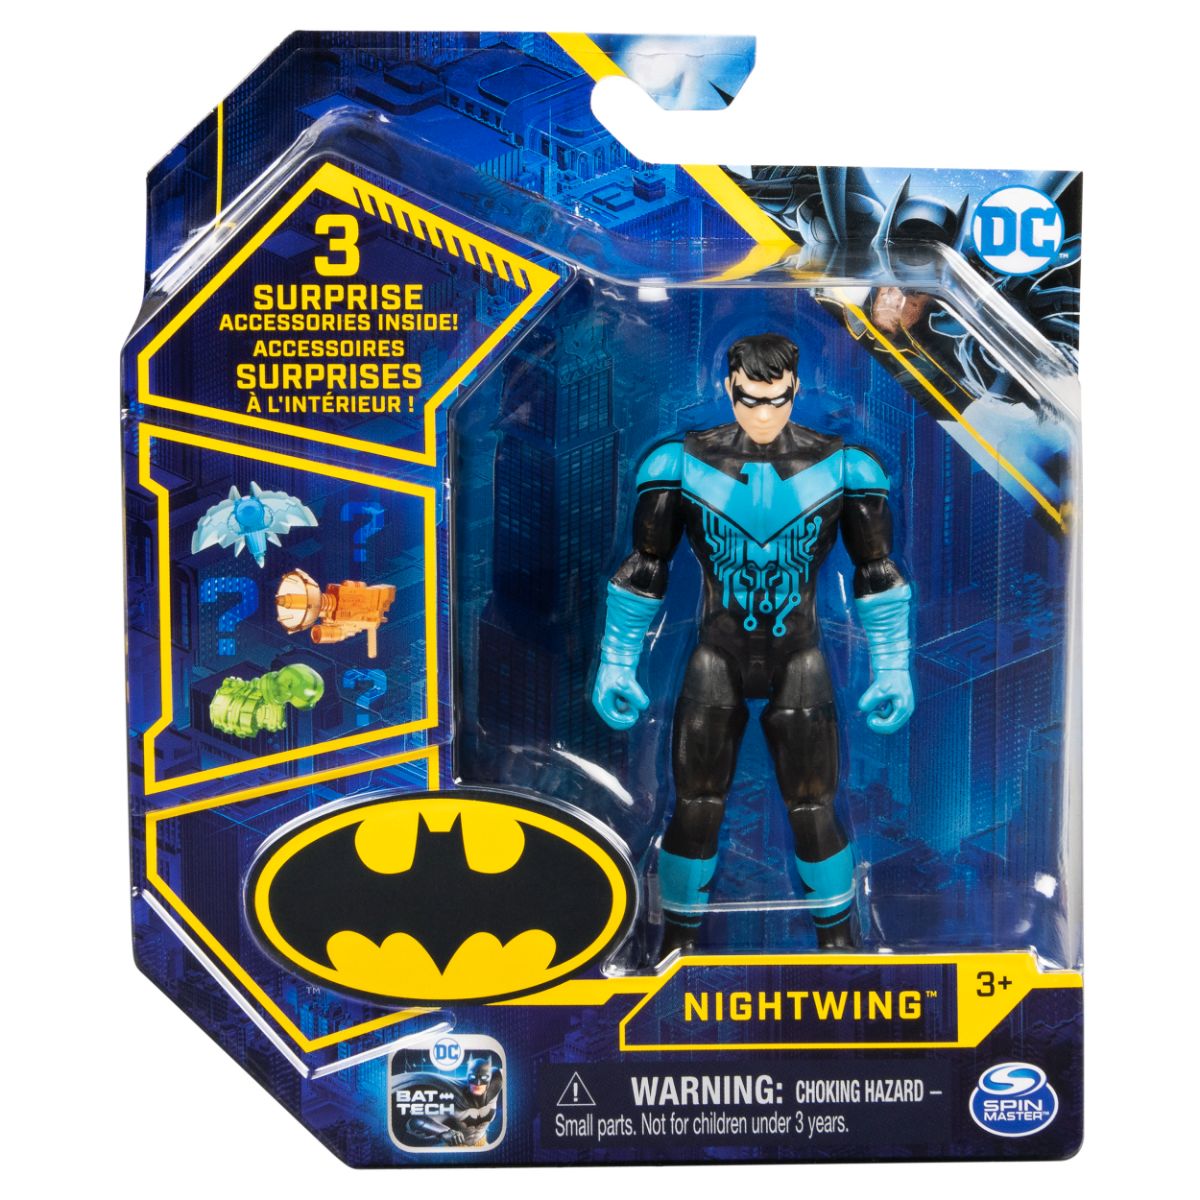 Set Figurina cu accesorii surpriza Batman, Nightwing 20131337 Batman imagine noua